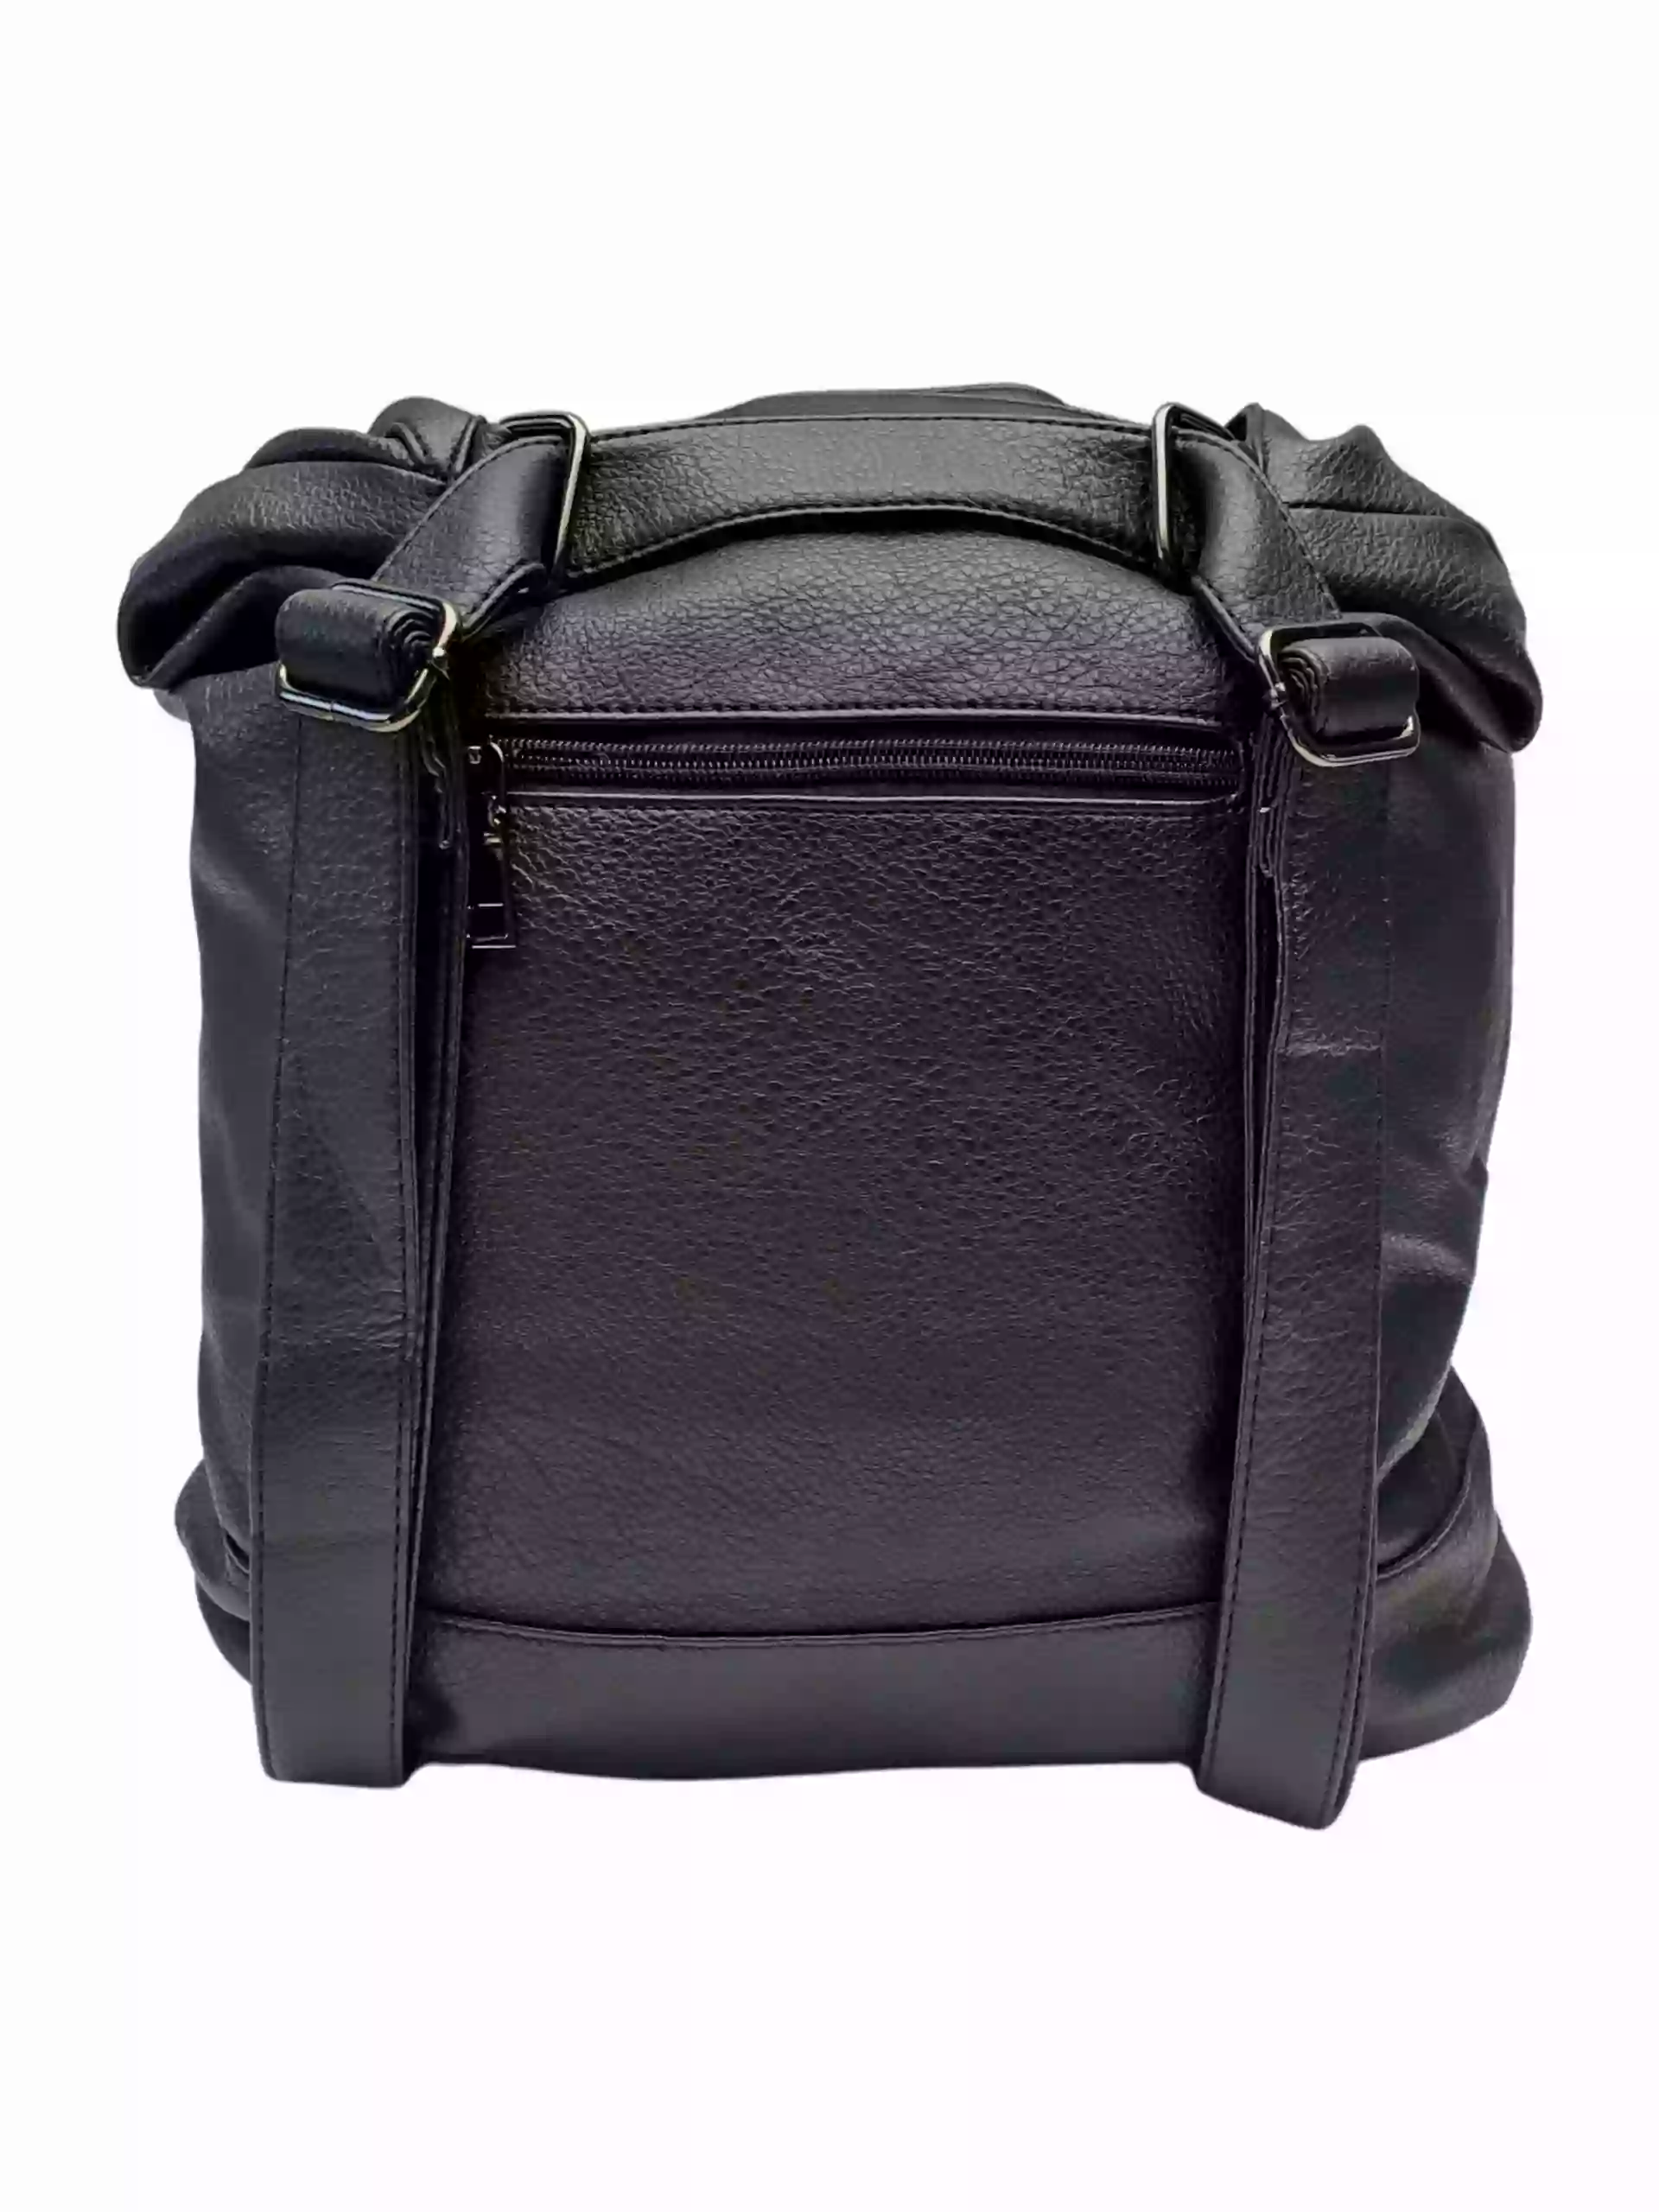 Velký černý kabelko-batoh 2v1 s šikmými vzory, Co & Coo Fashion, 0956, zadní strana kabelko-batohu 2v1 s popruhy